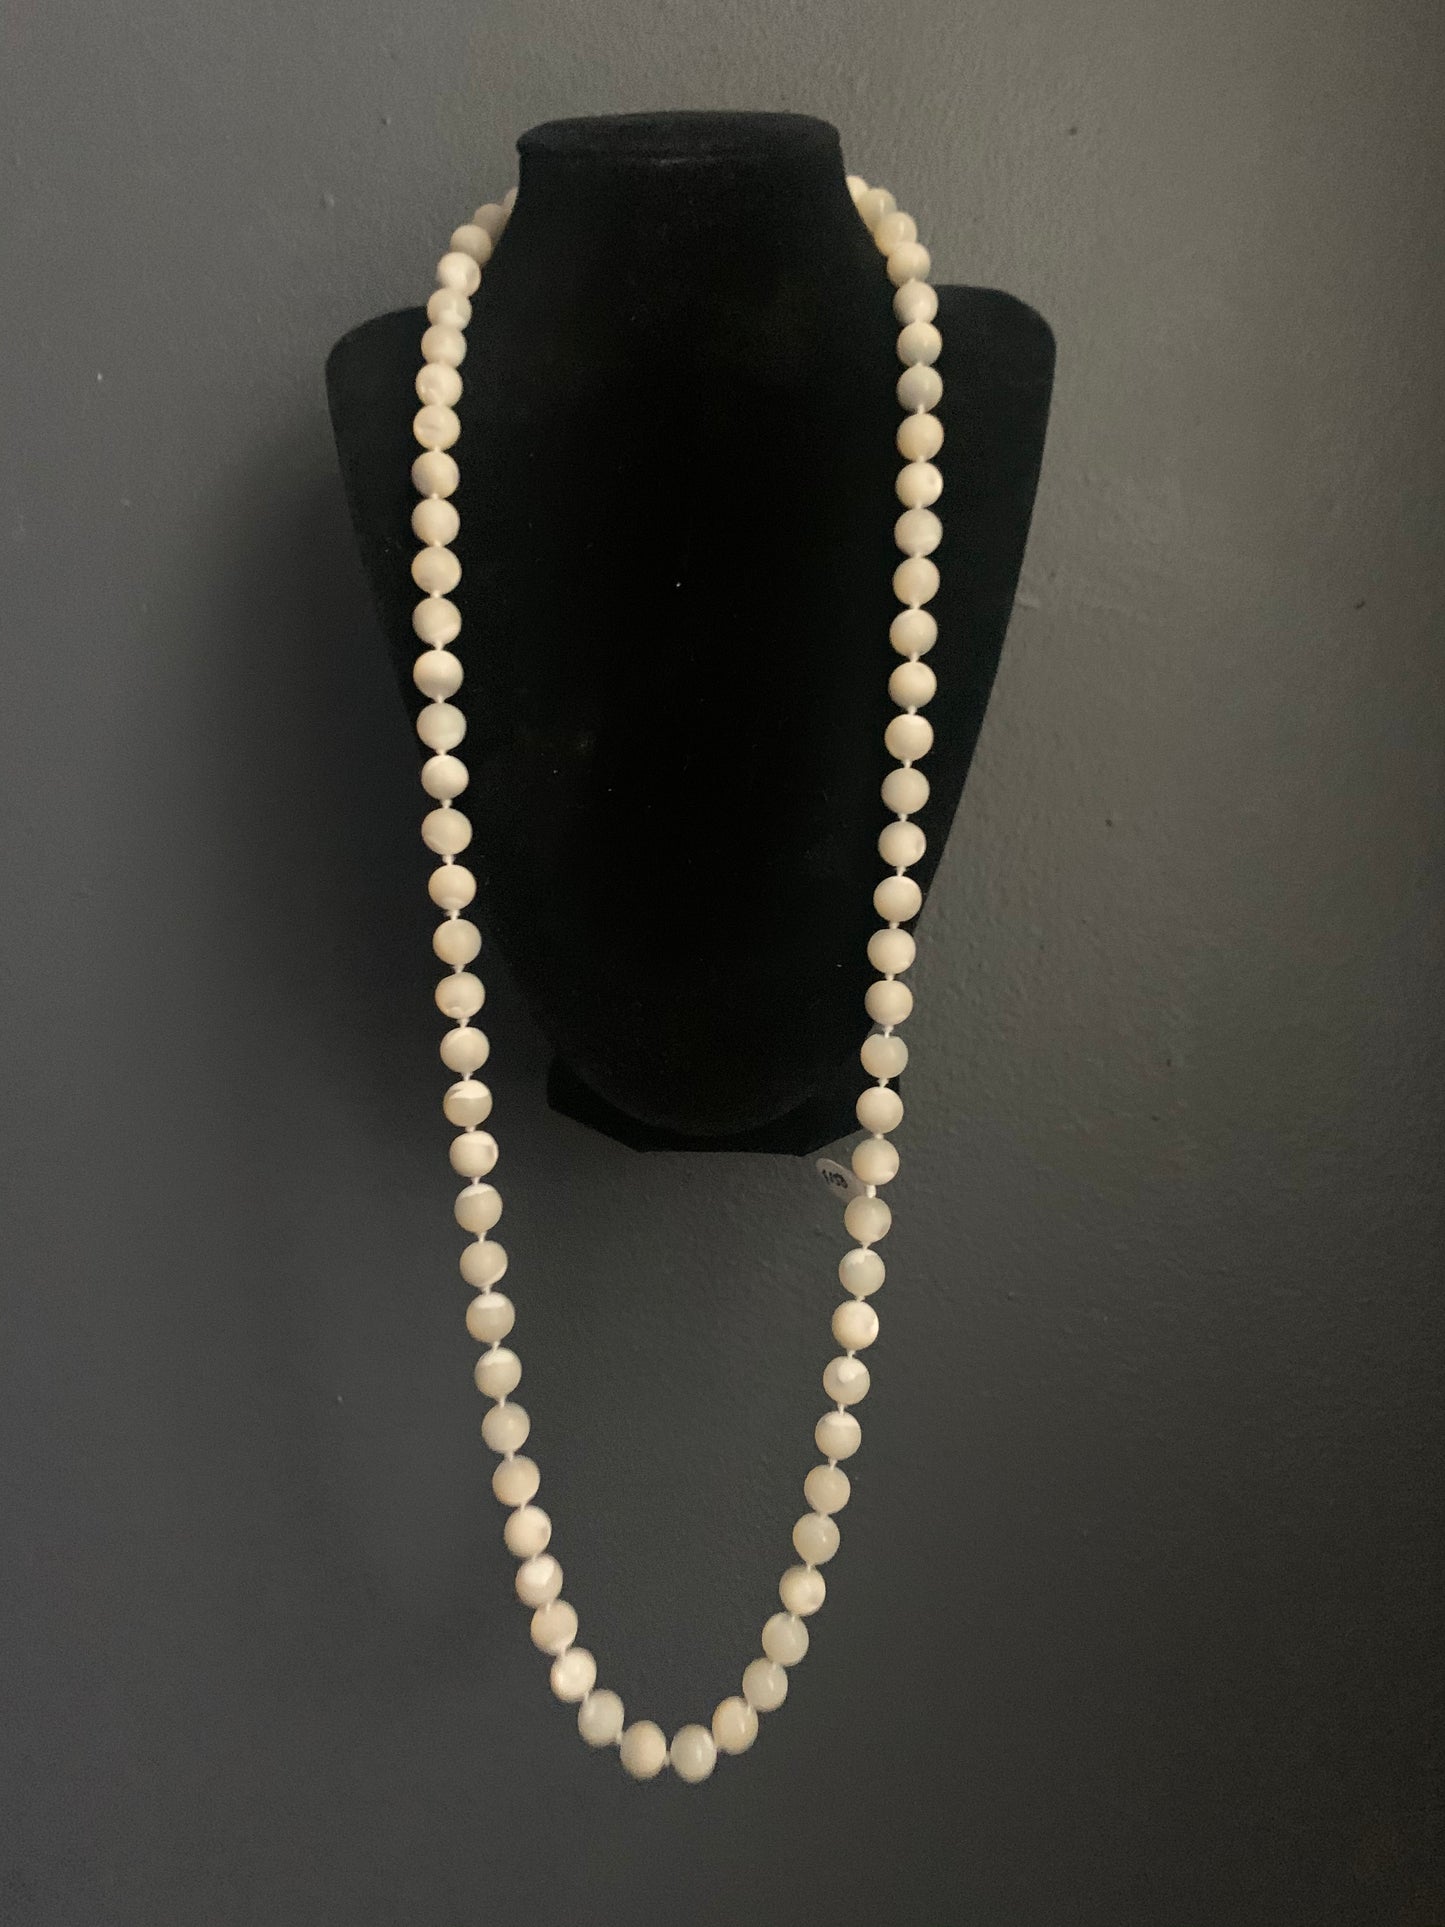 A MOP necklace